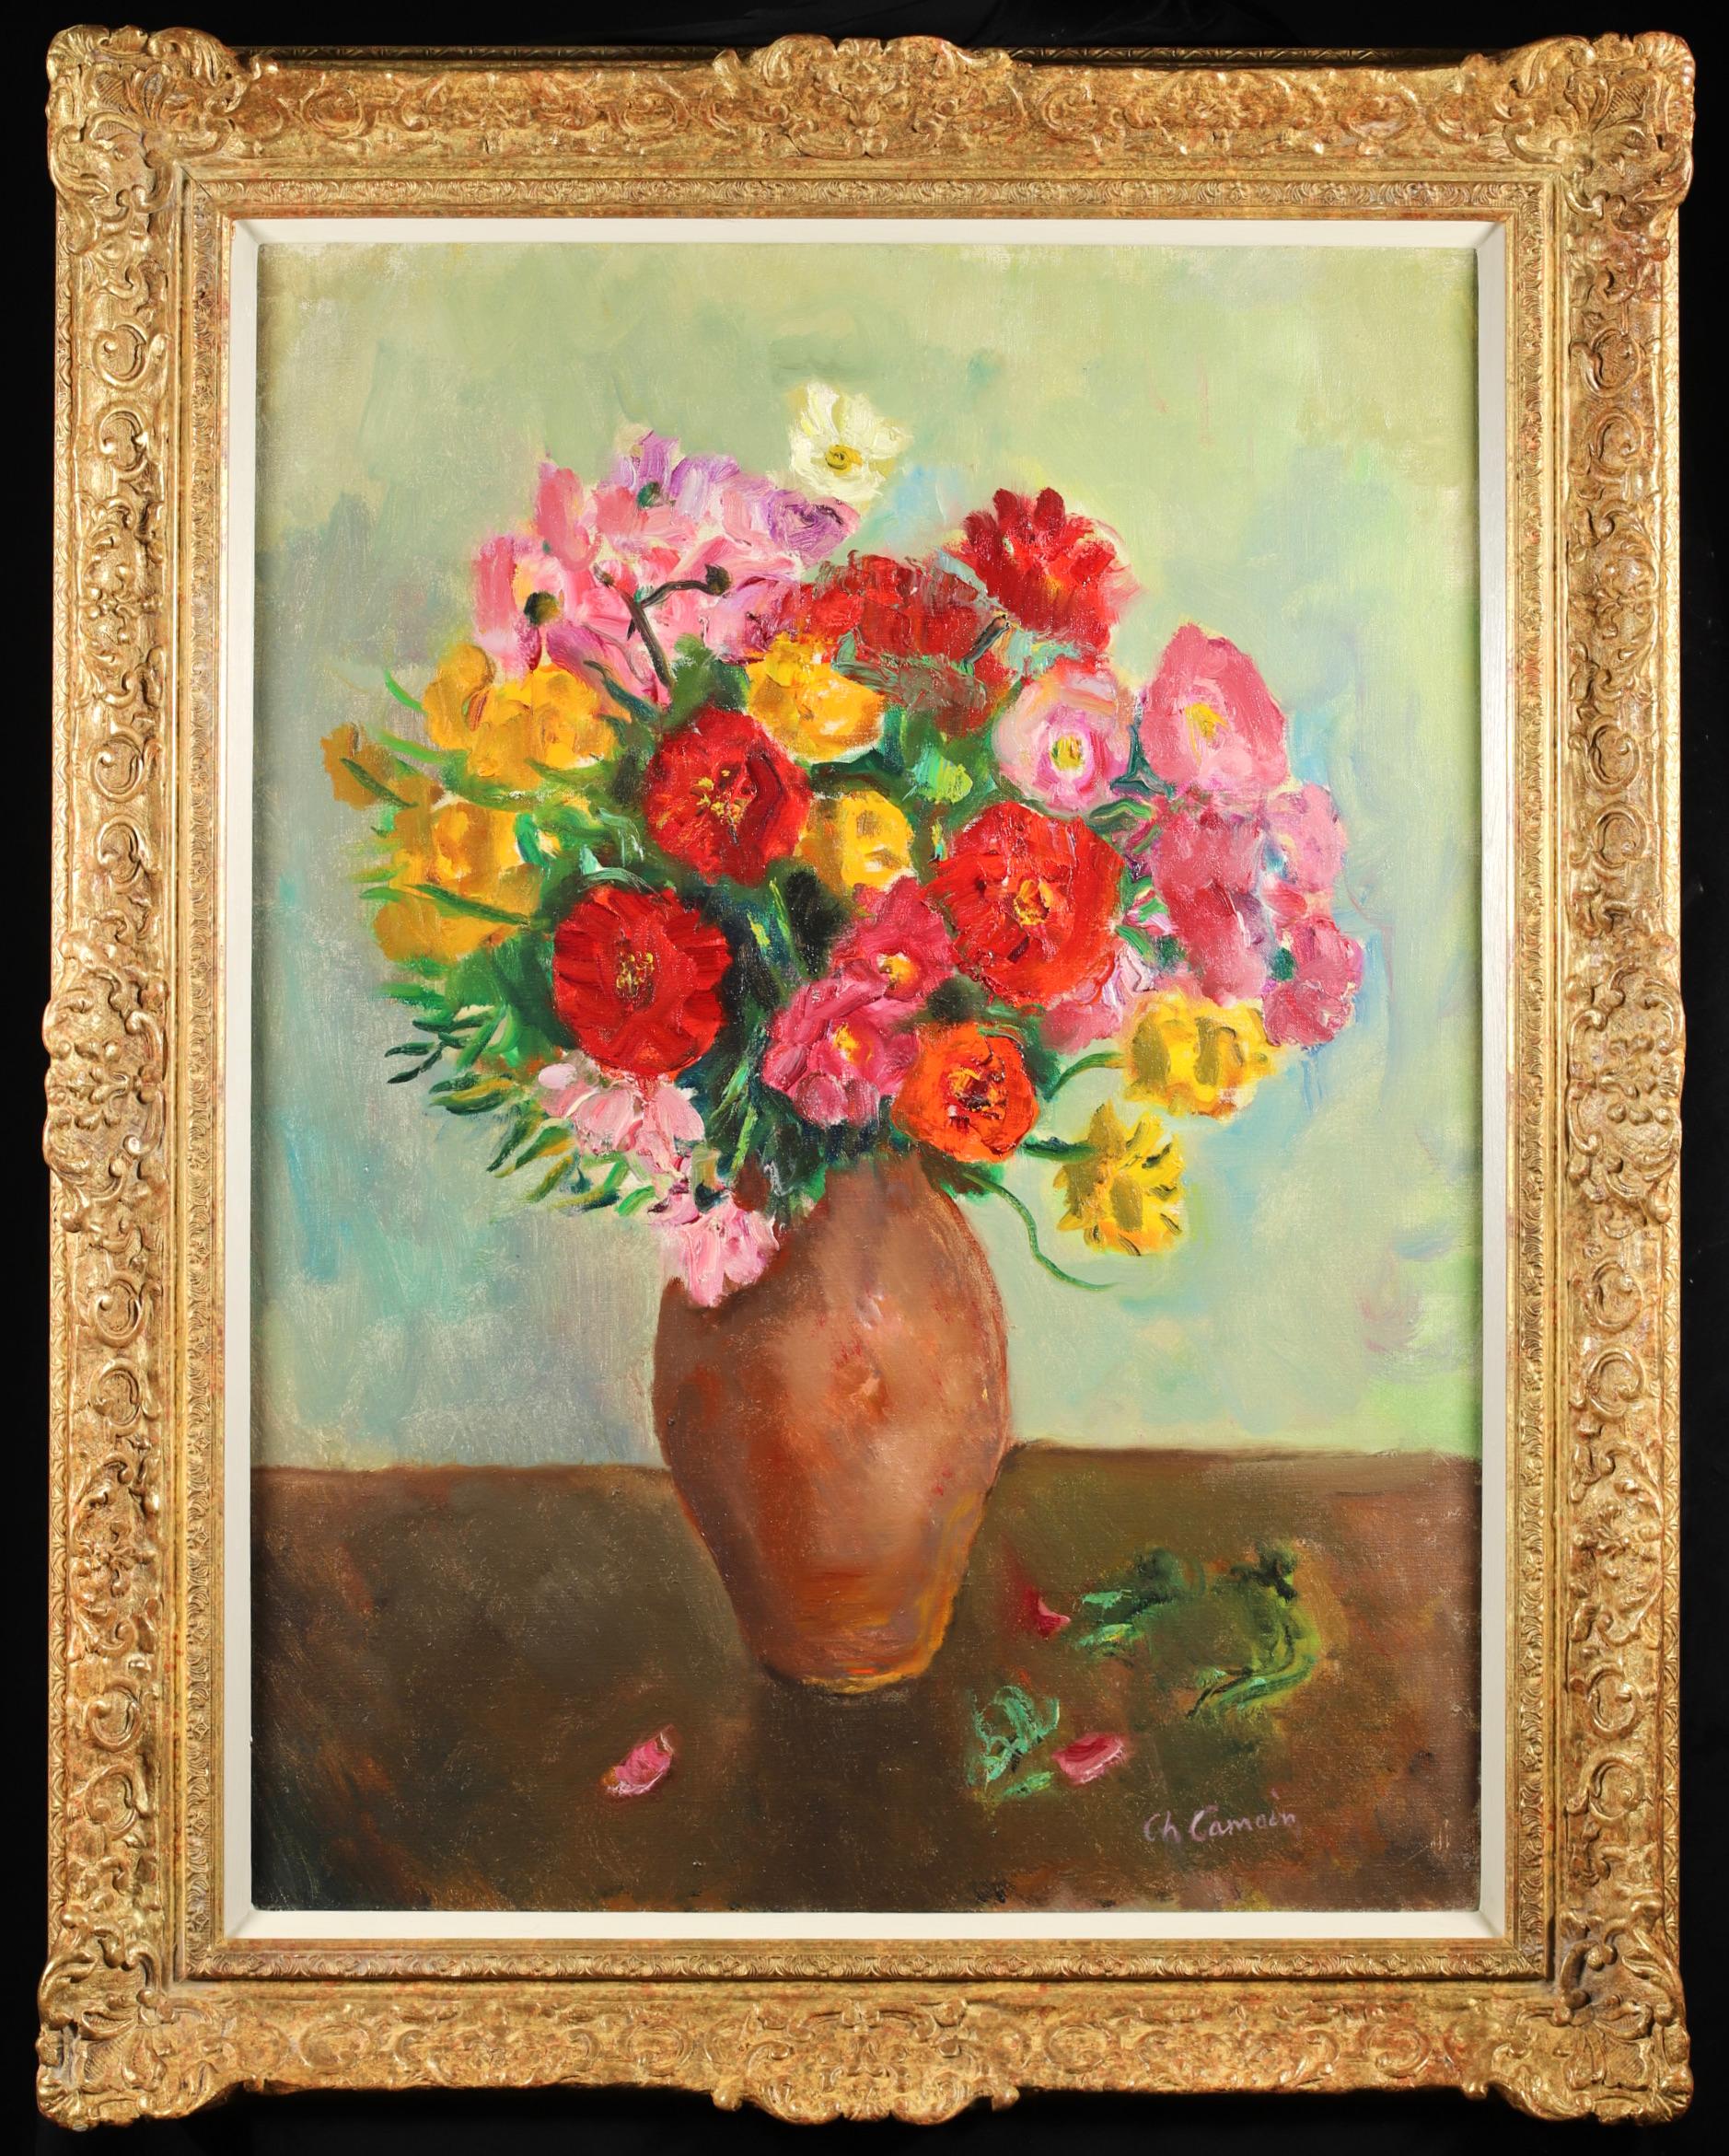 Signiertes Stillleben in Öl auf Leinwand des französischen expressionistischen und fauvistischen Malers Charles Camoin. Das Werk zeigt einen leuchtenden Blumenstrauß in Rot-, Gelb-, Blau- und Rosatönen in einer Vase aus Steingut.